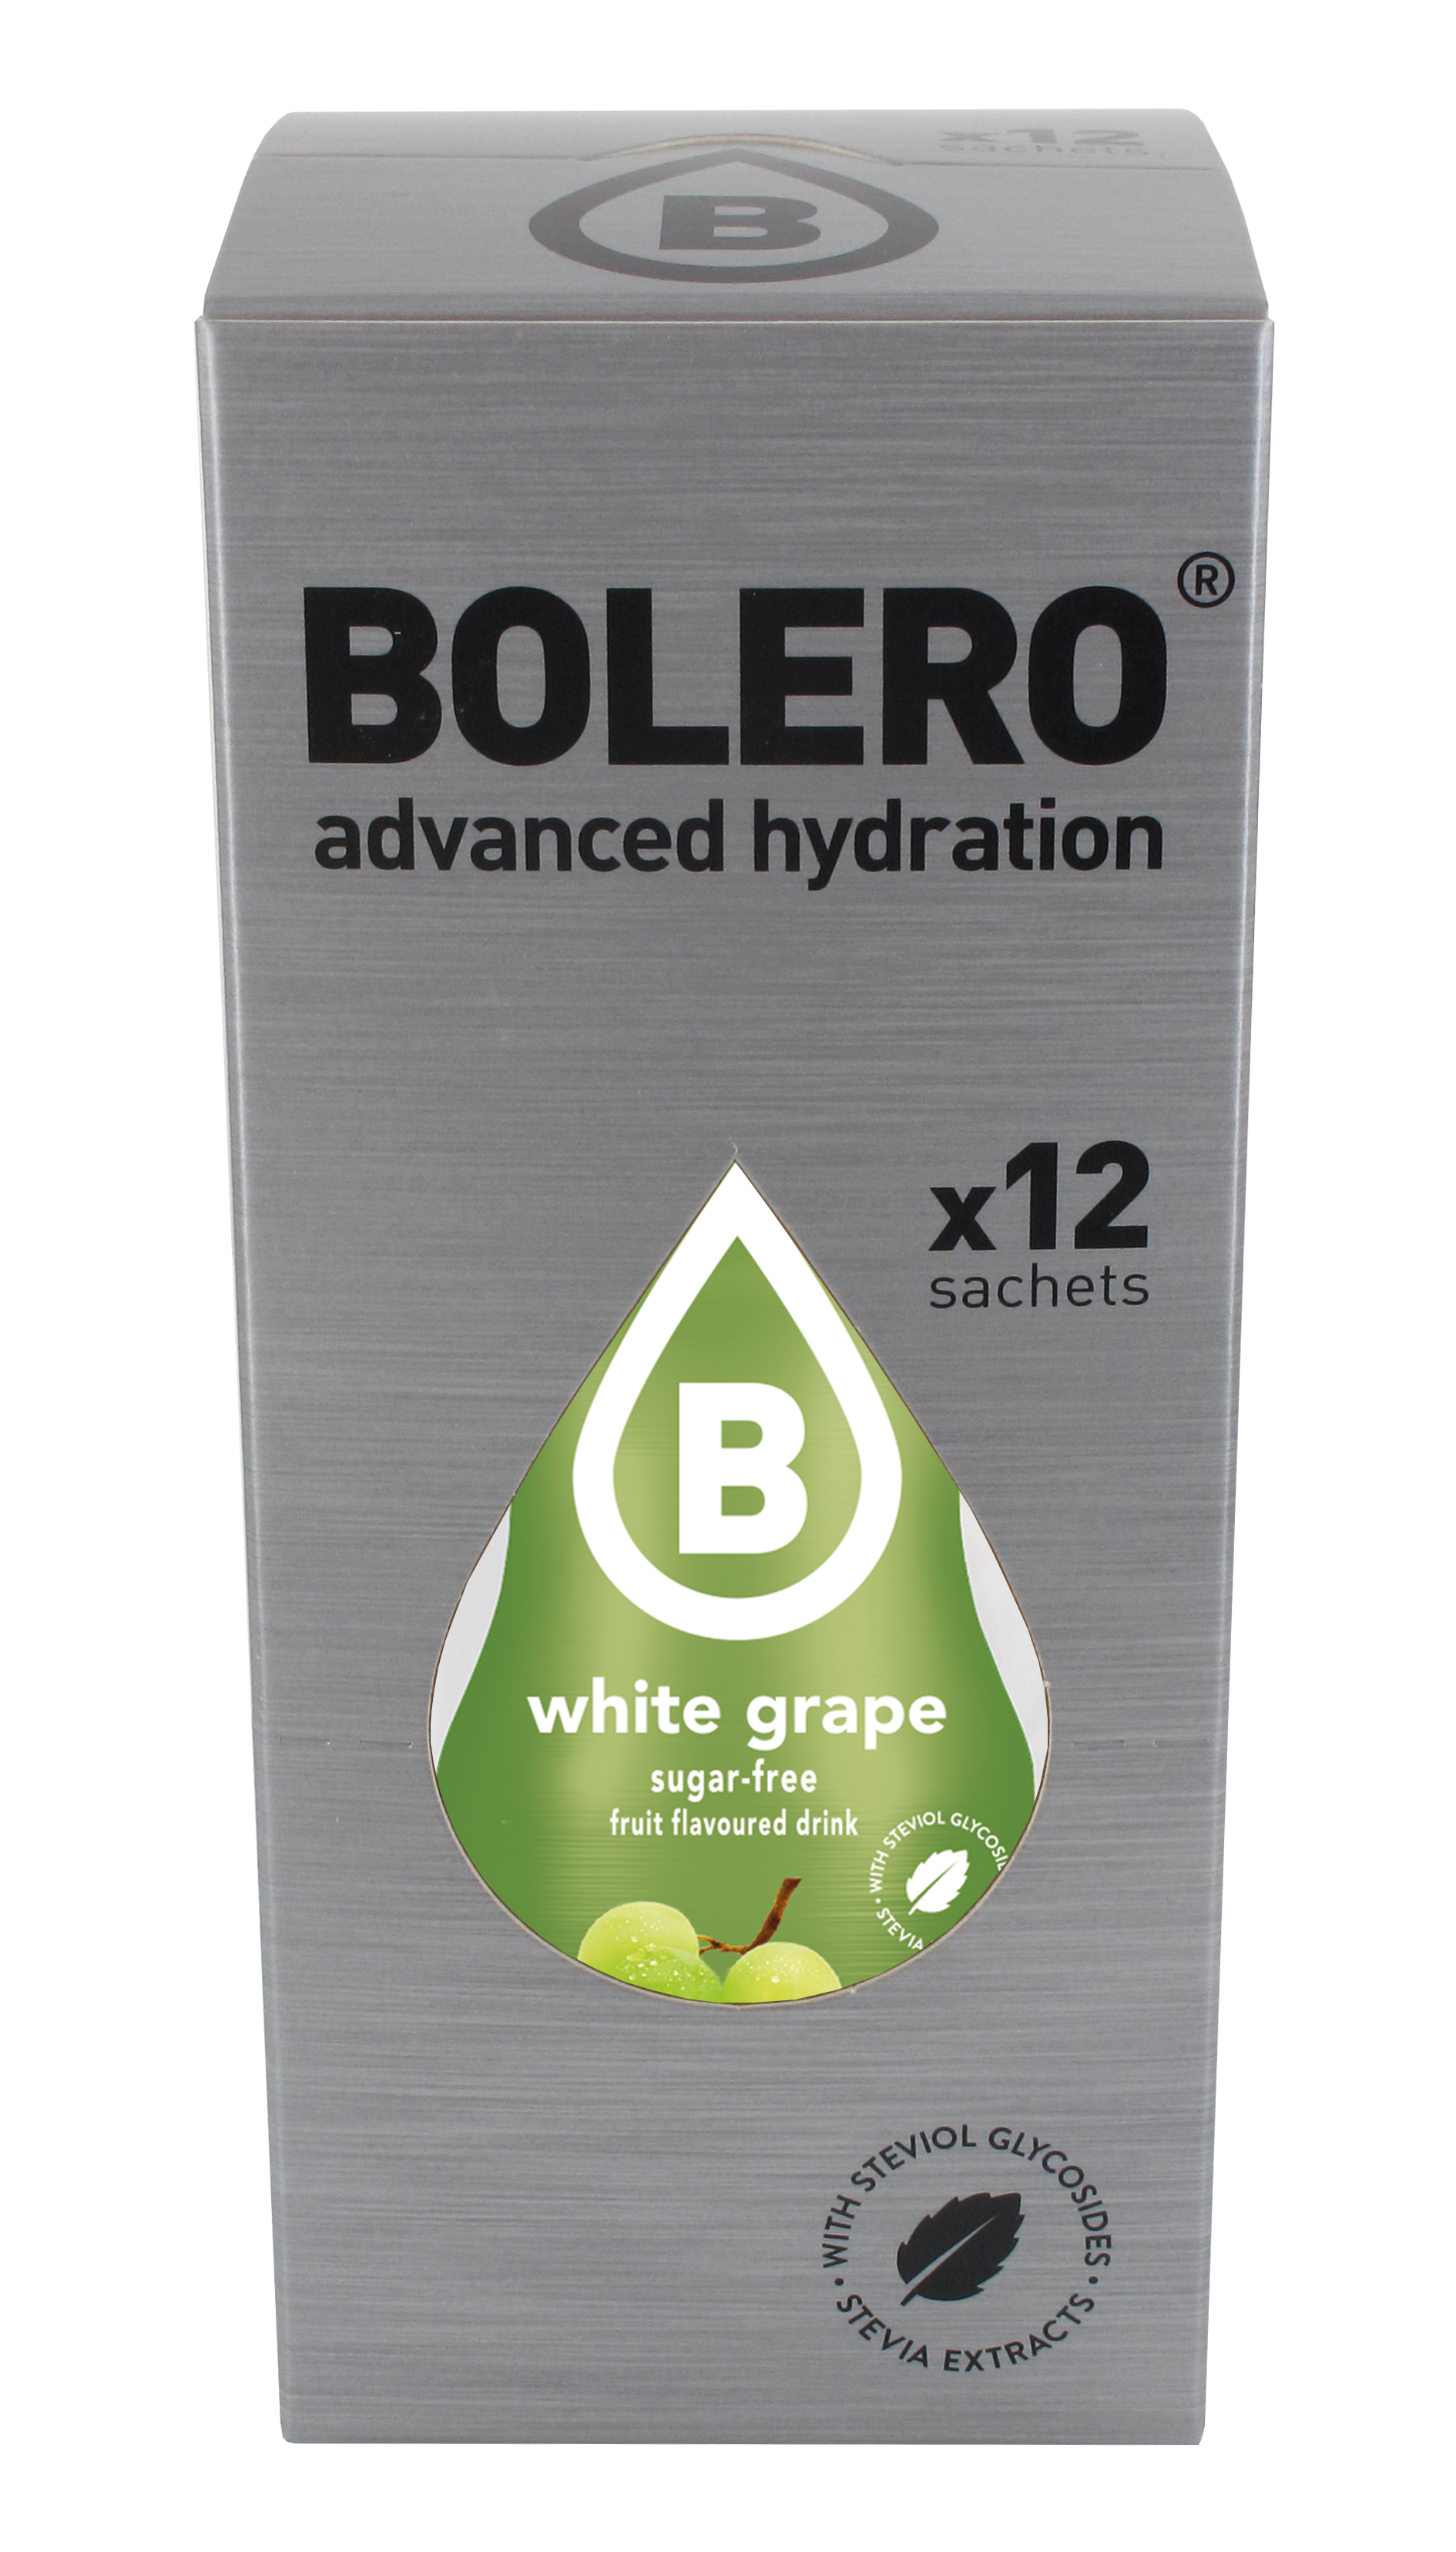 boîte bolero white grape - 12 x 9g